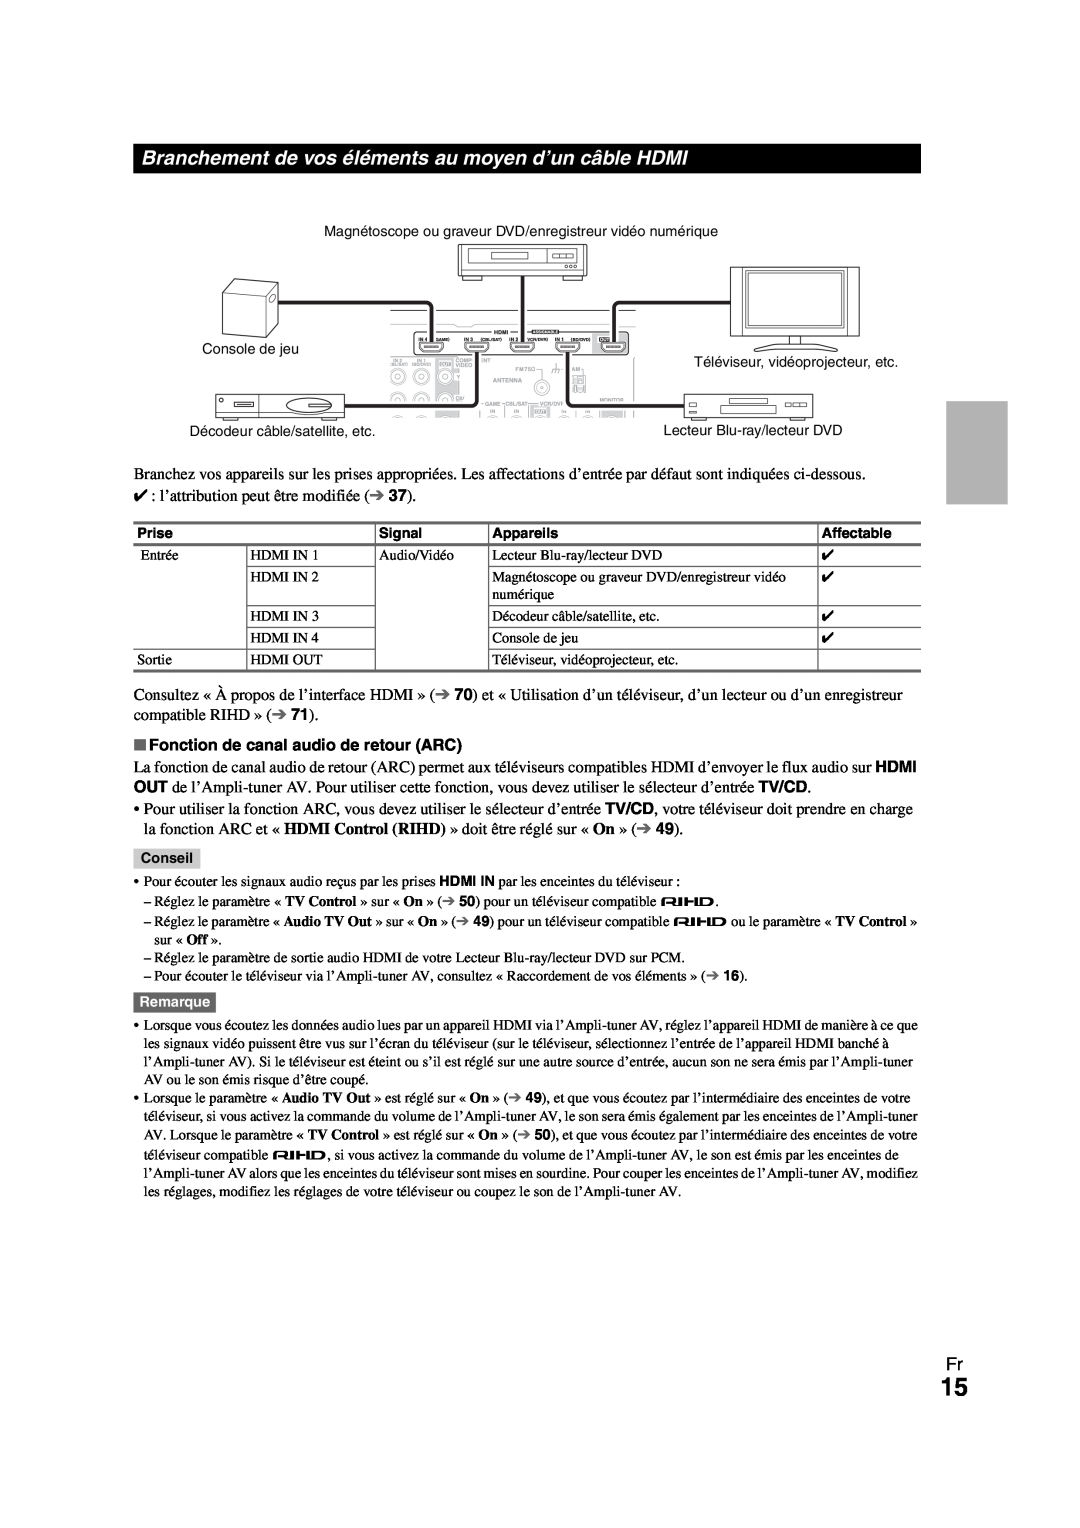 Onkyo HT-R980 instruction manual Fonction de canal audio de retour ARC 